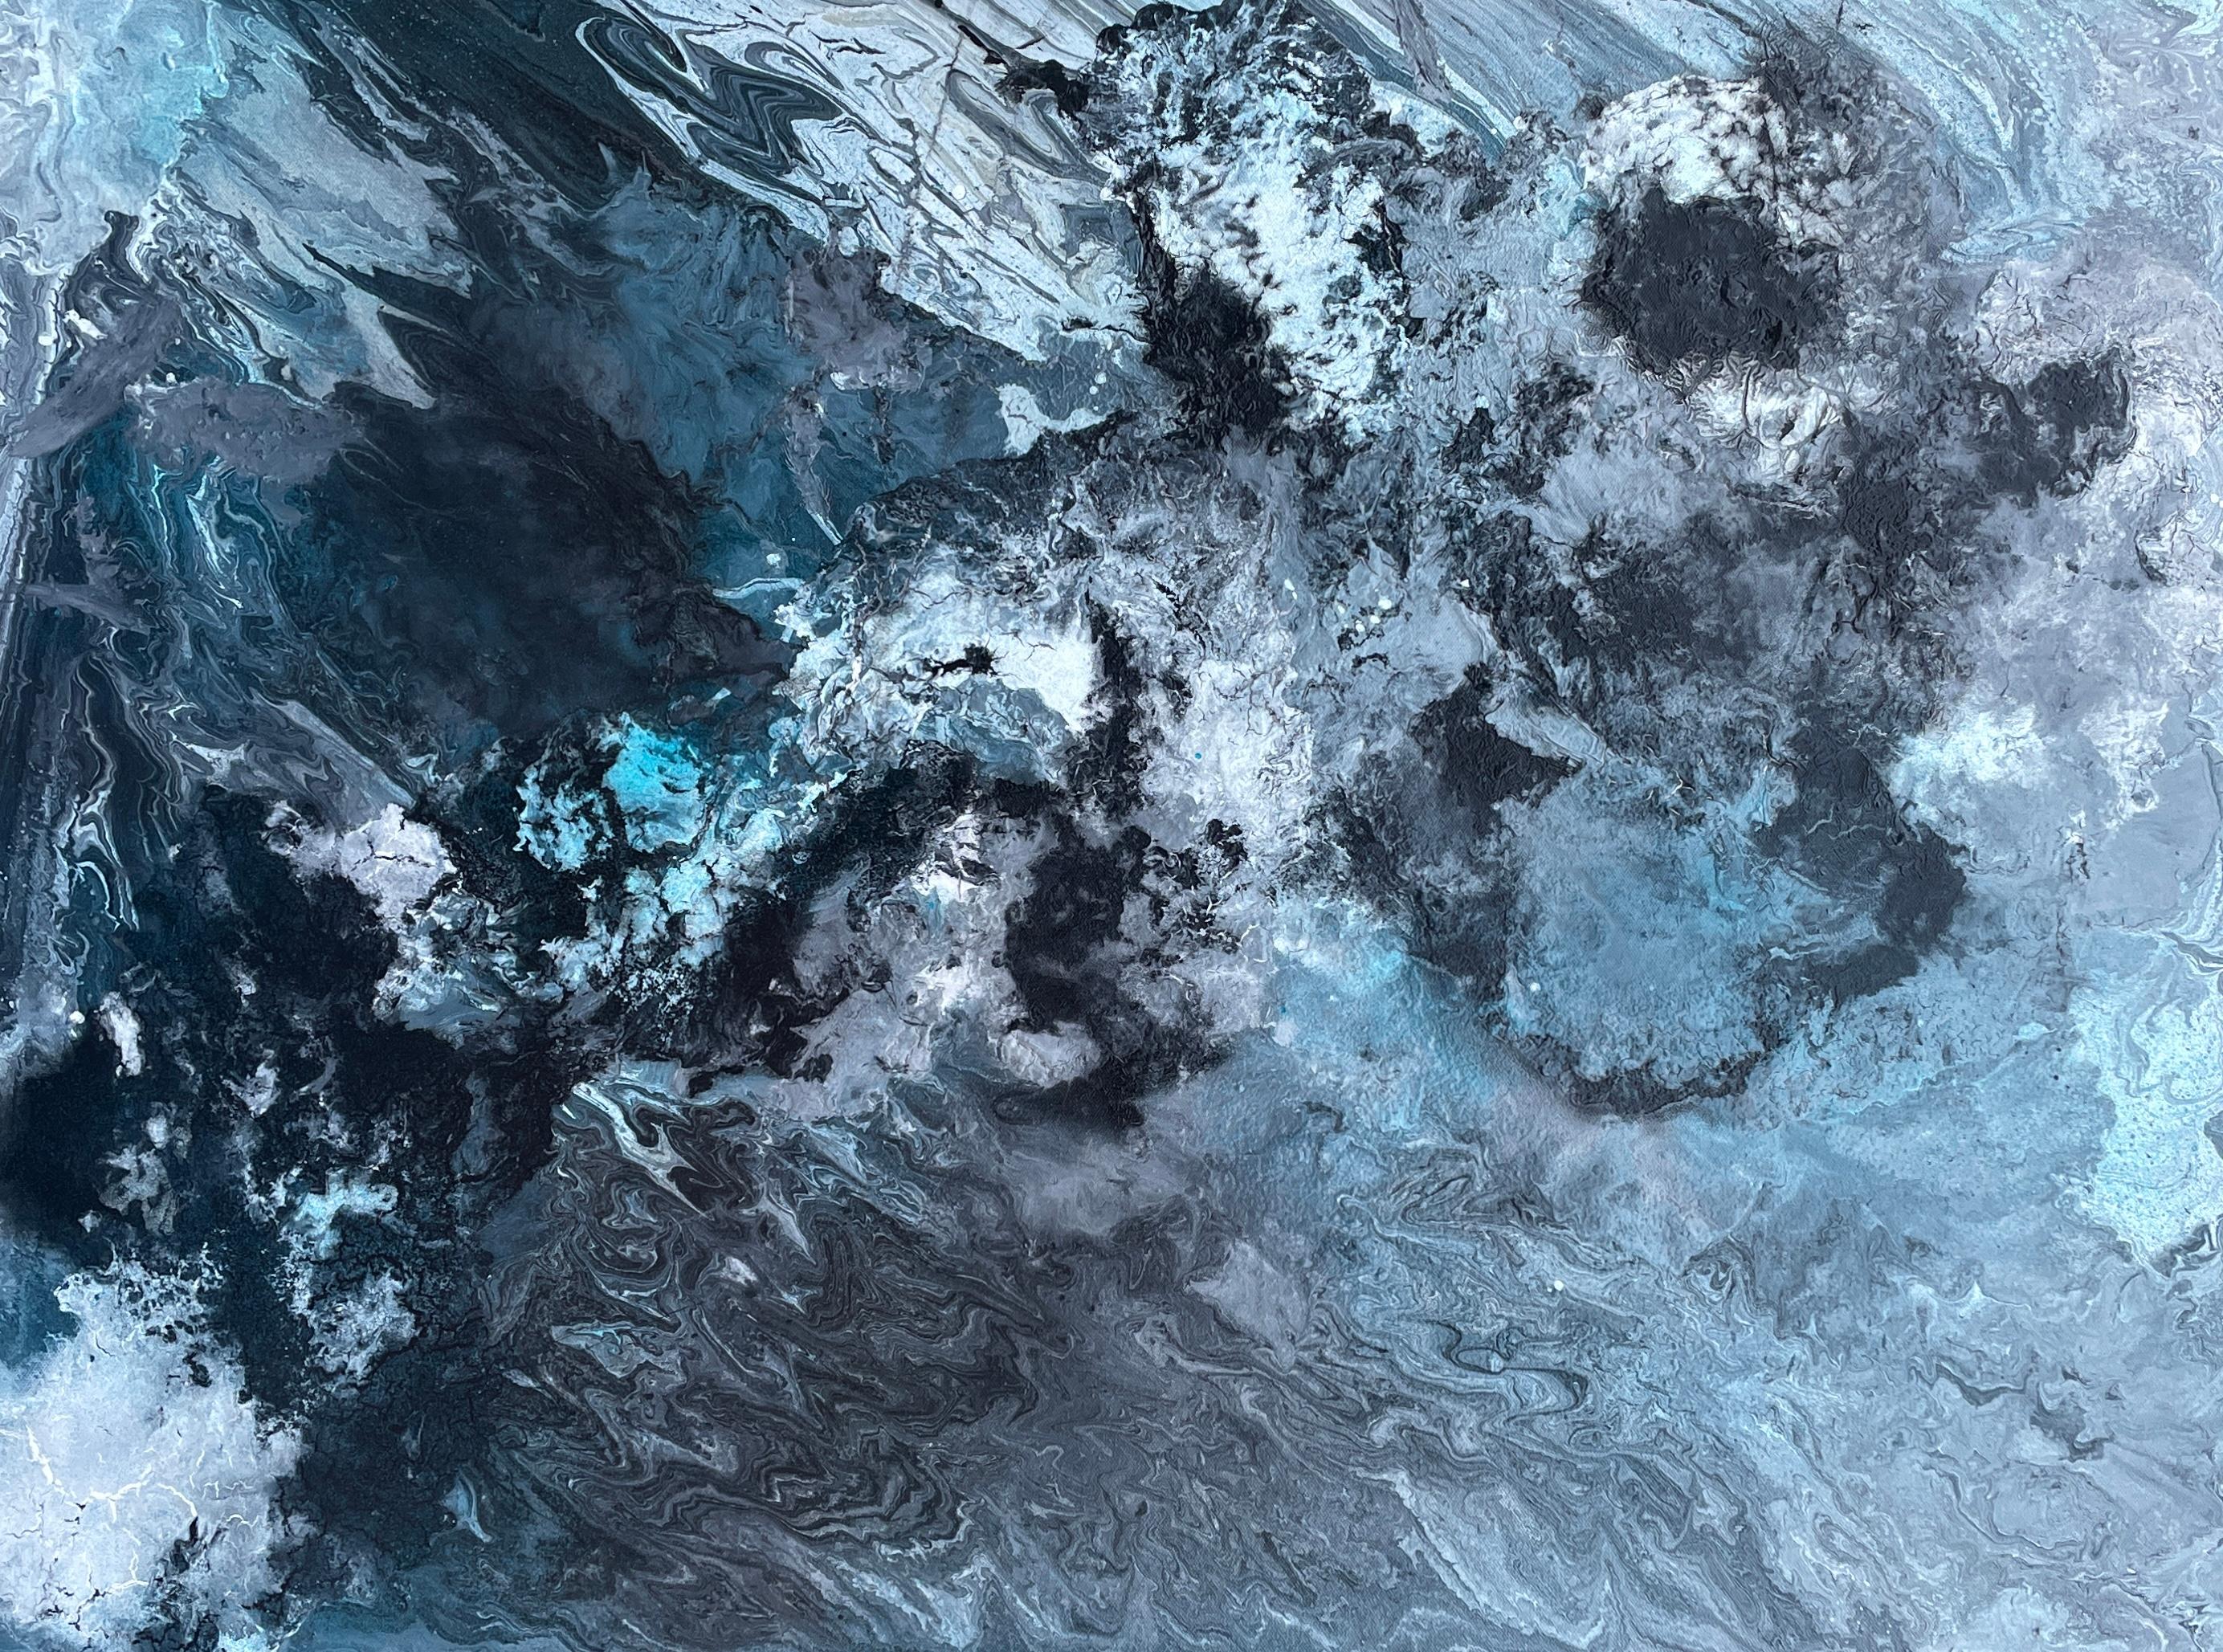 "Incoming Tide" de Lori Poncsak est une remarquable acrylique sur toile de 30" x 40" qui incarne les forces dynamiques de la nature capturées à travers l'expressionnisme abstrait. L'œuvre présente une riche palette de bleus profonds, de turquoises